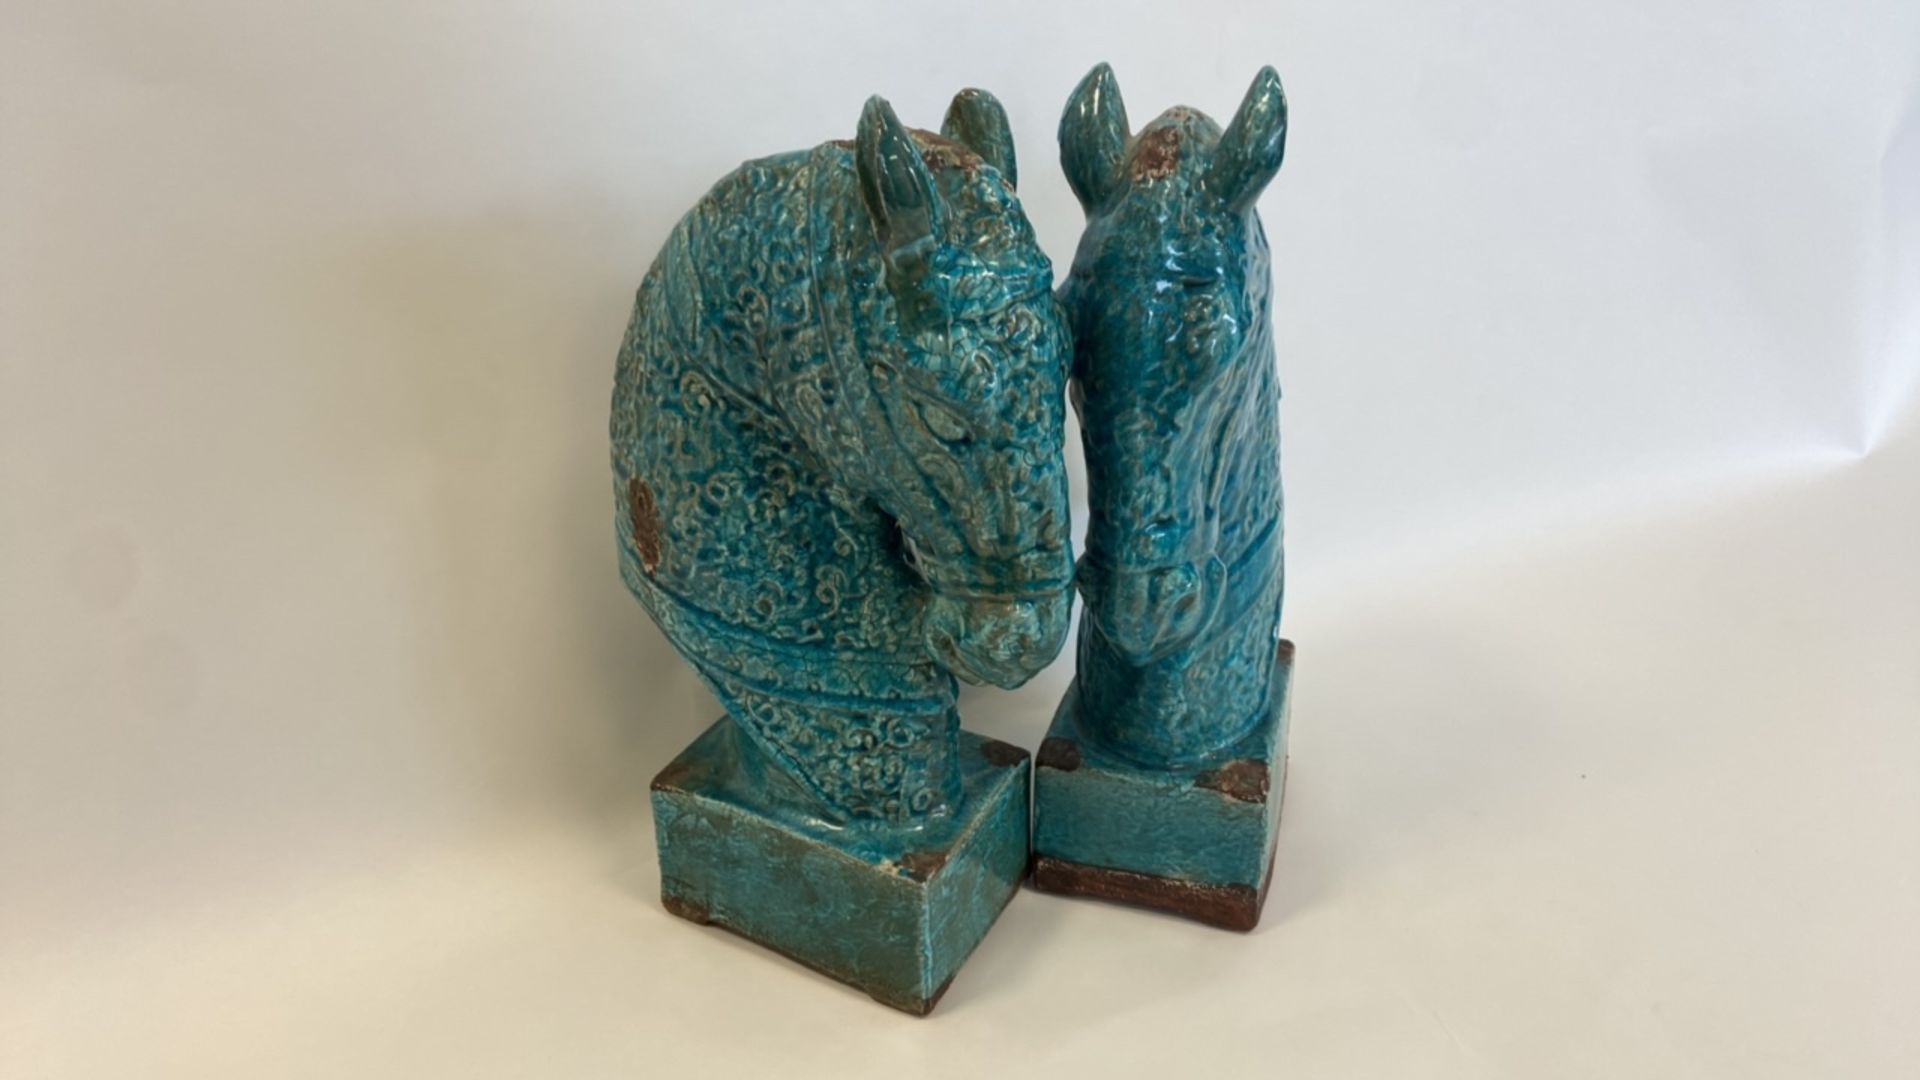 Antique, Handmade Ceramic Horse Statue - Image 3 of 8